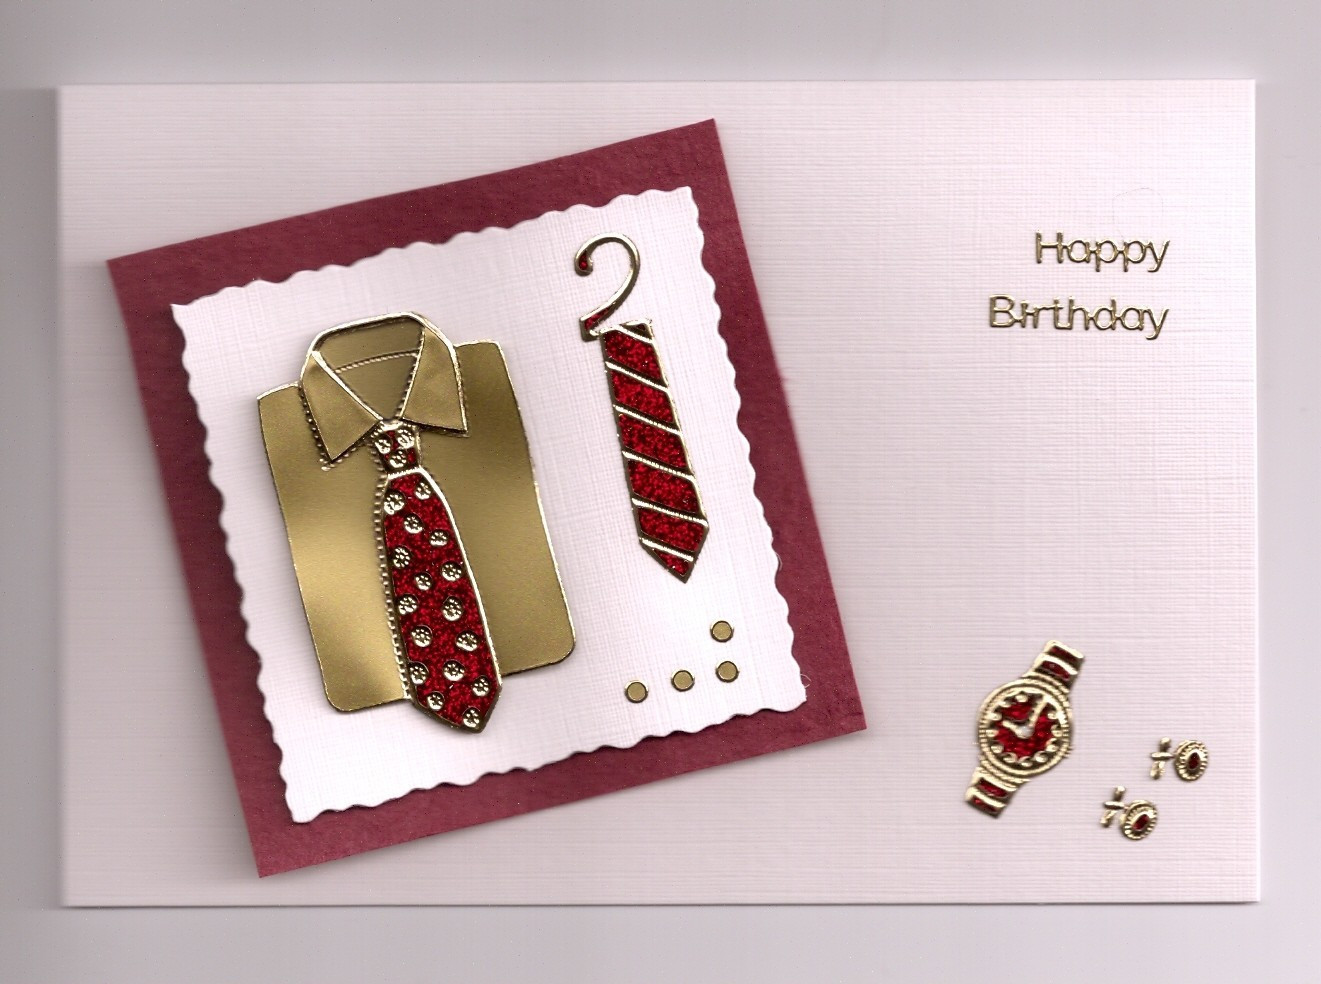 Birthday Cards For Men
 Handmade Birthday Cards for Men Let s Celebrate